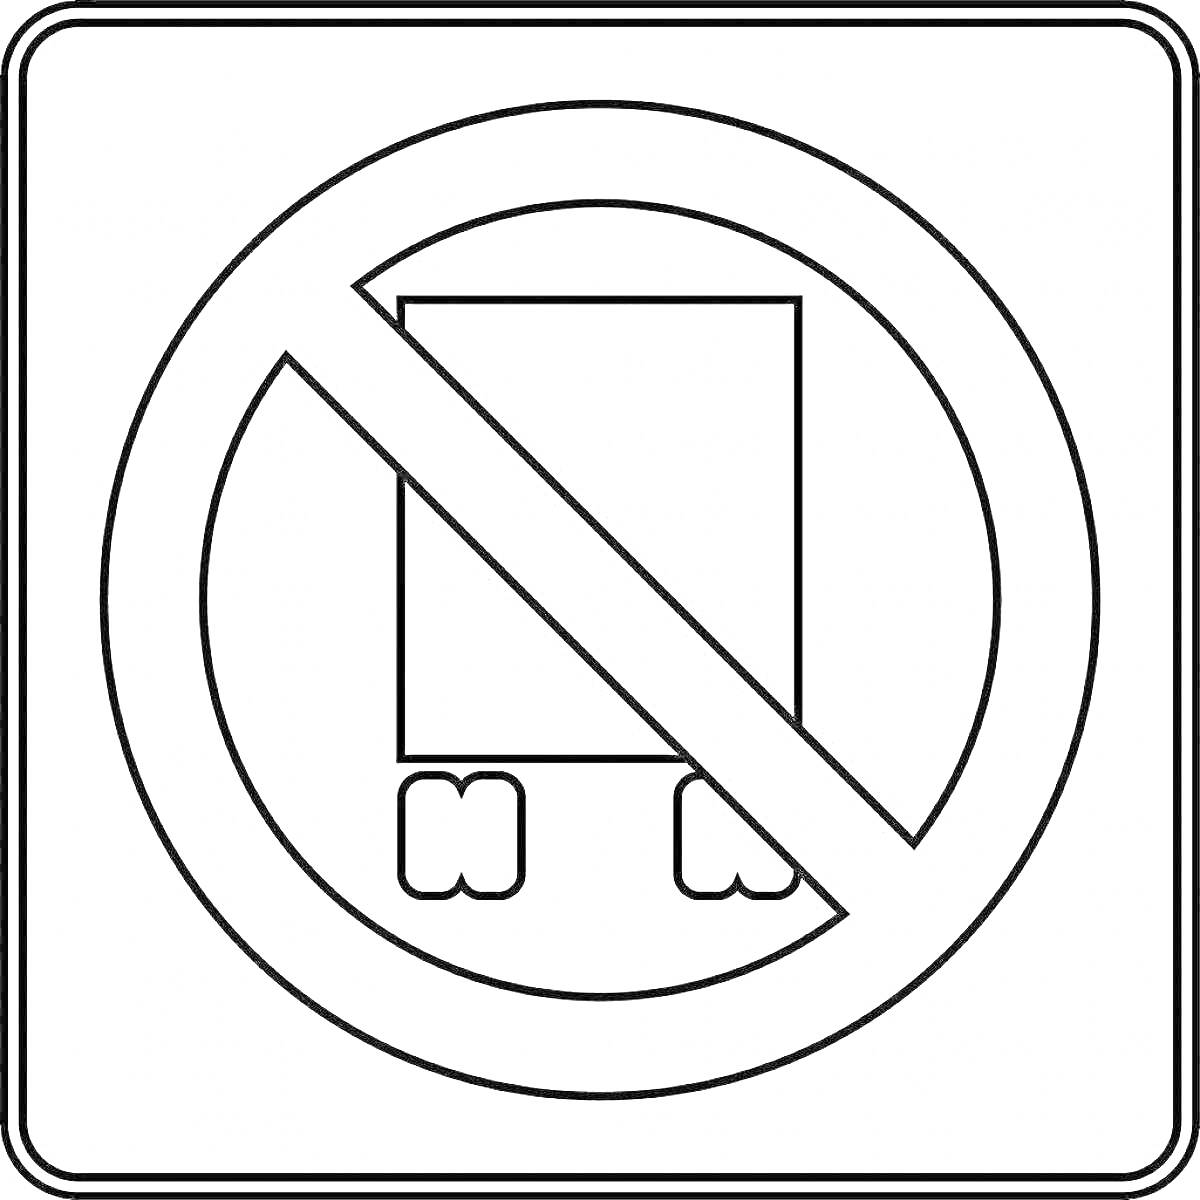 запрещающий знак с изображением перечеркнутого грузовика